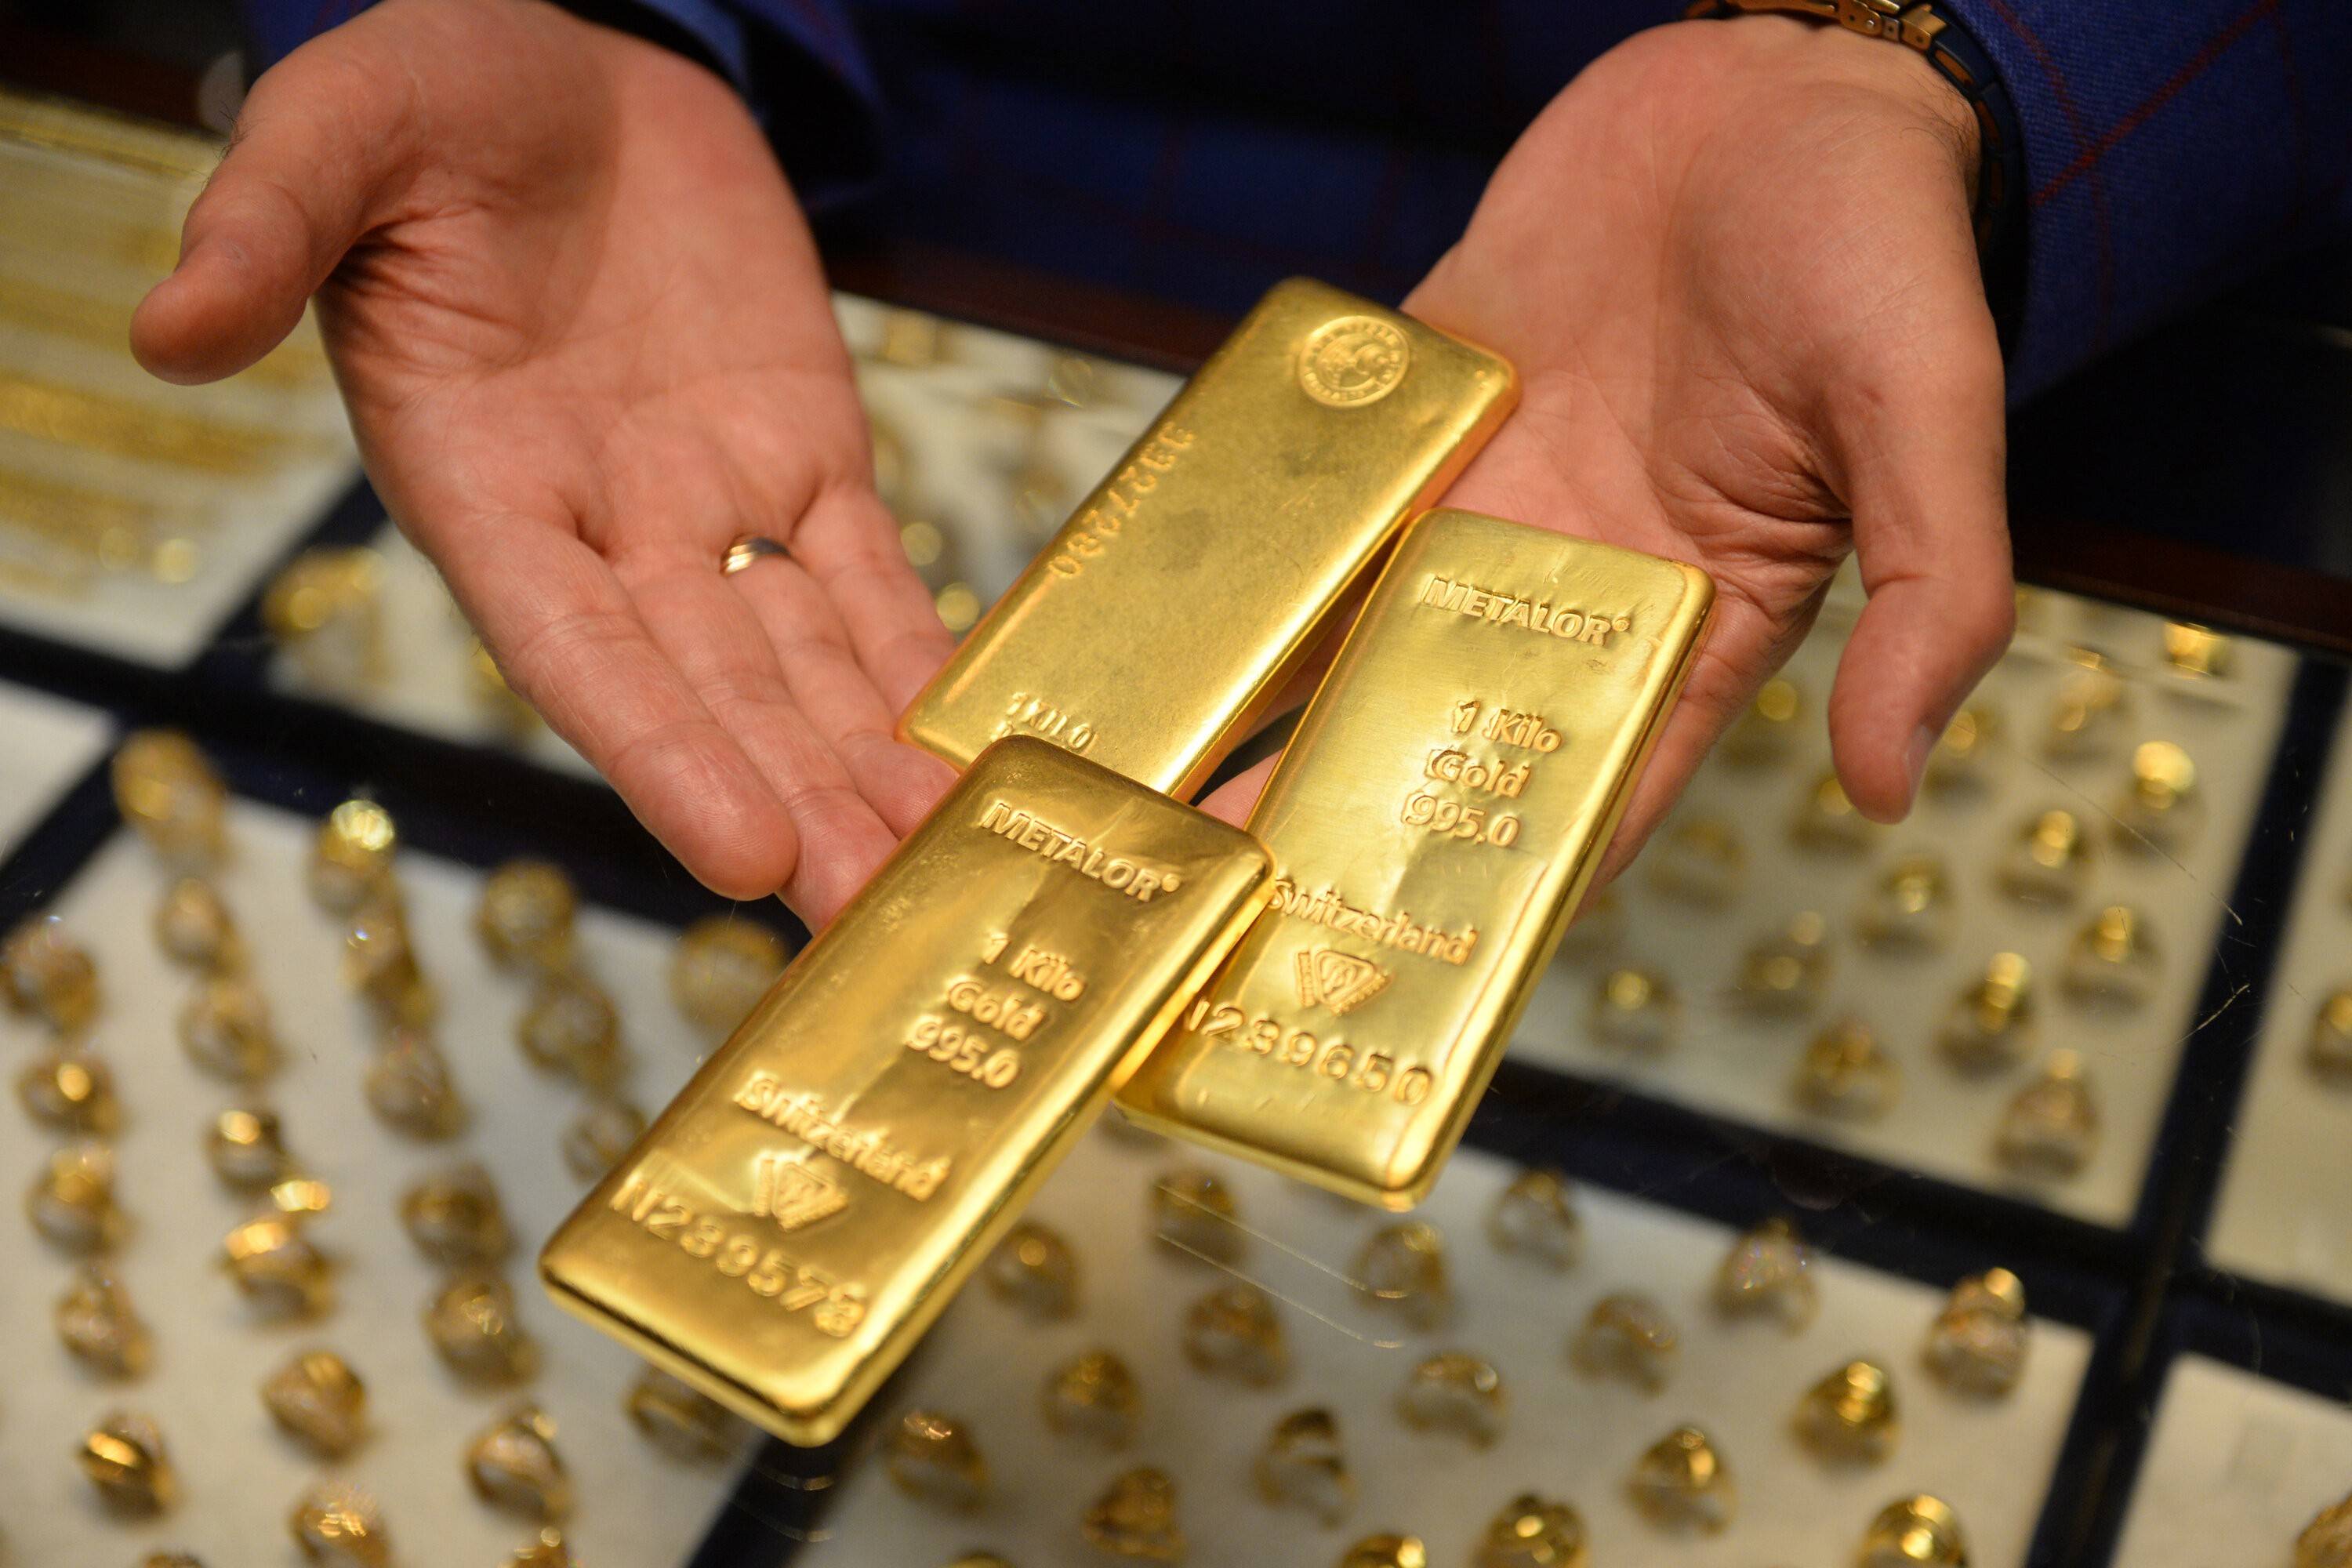 Dünya Altın Konseyi'nin yayınladığı rapora göre, Türkiye'nin 431,1 ton olarak altın rezervi bulunuyor. Türkiye bu rakam ile birlikte bir çok ülkeyi geride bırakmayı başardı.
Sabah Gazetesi'nde yer alan habere göre; WGC verilerince en büyük altın rezervine sahip 40 ülke şöyle sıralandı;
